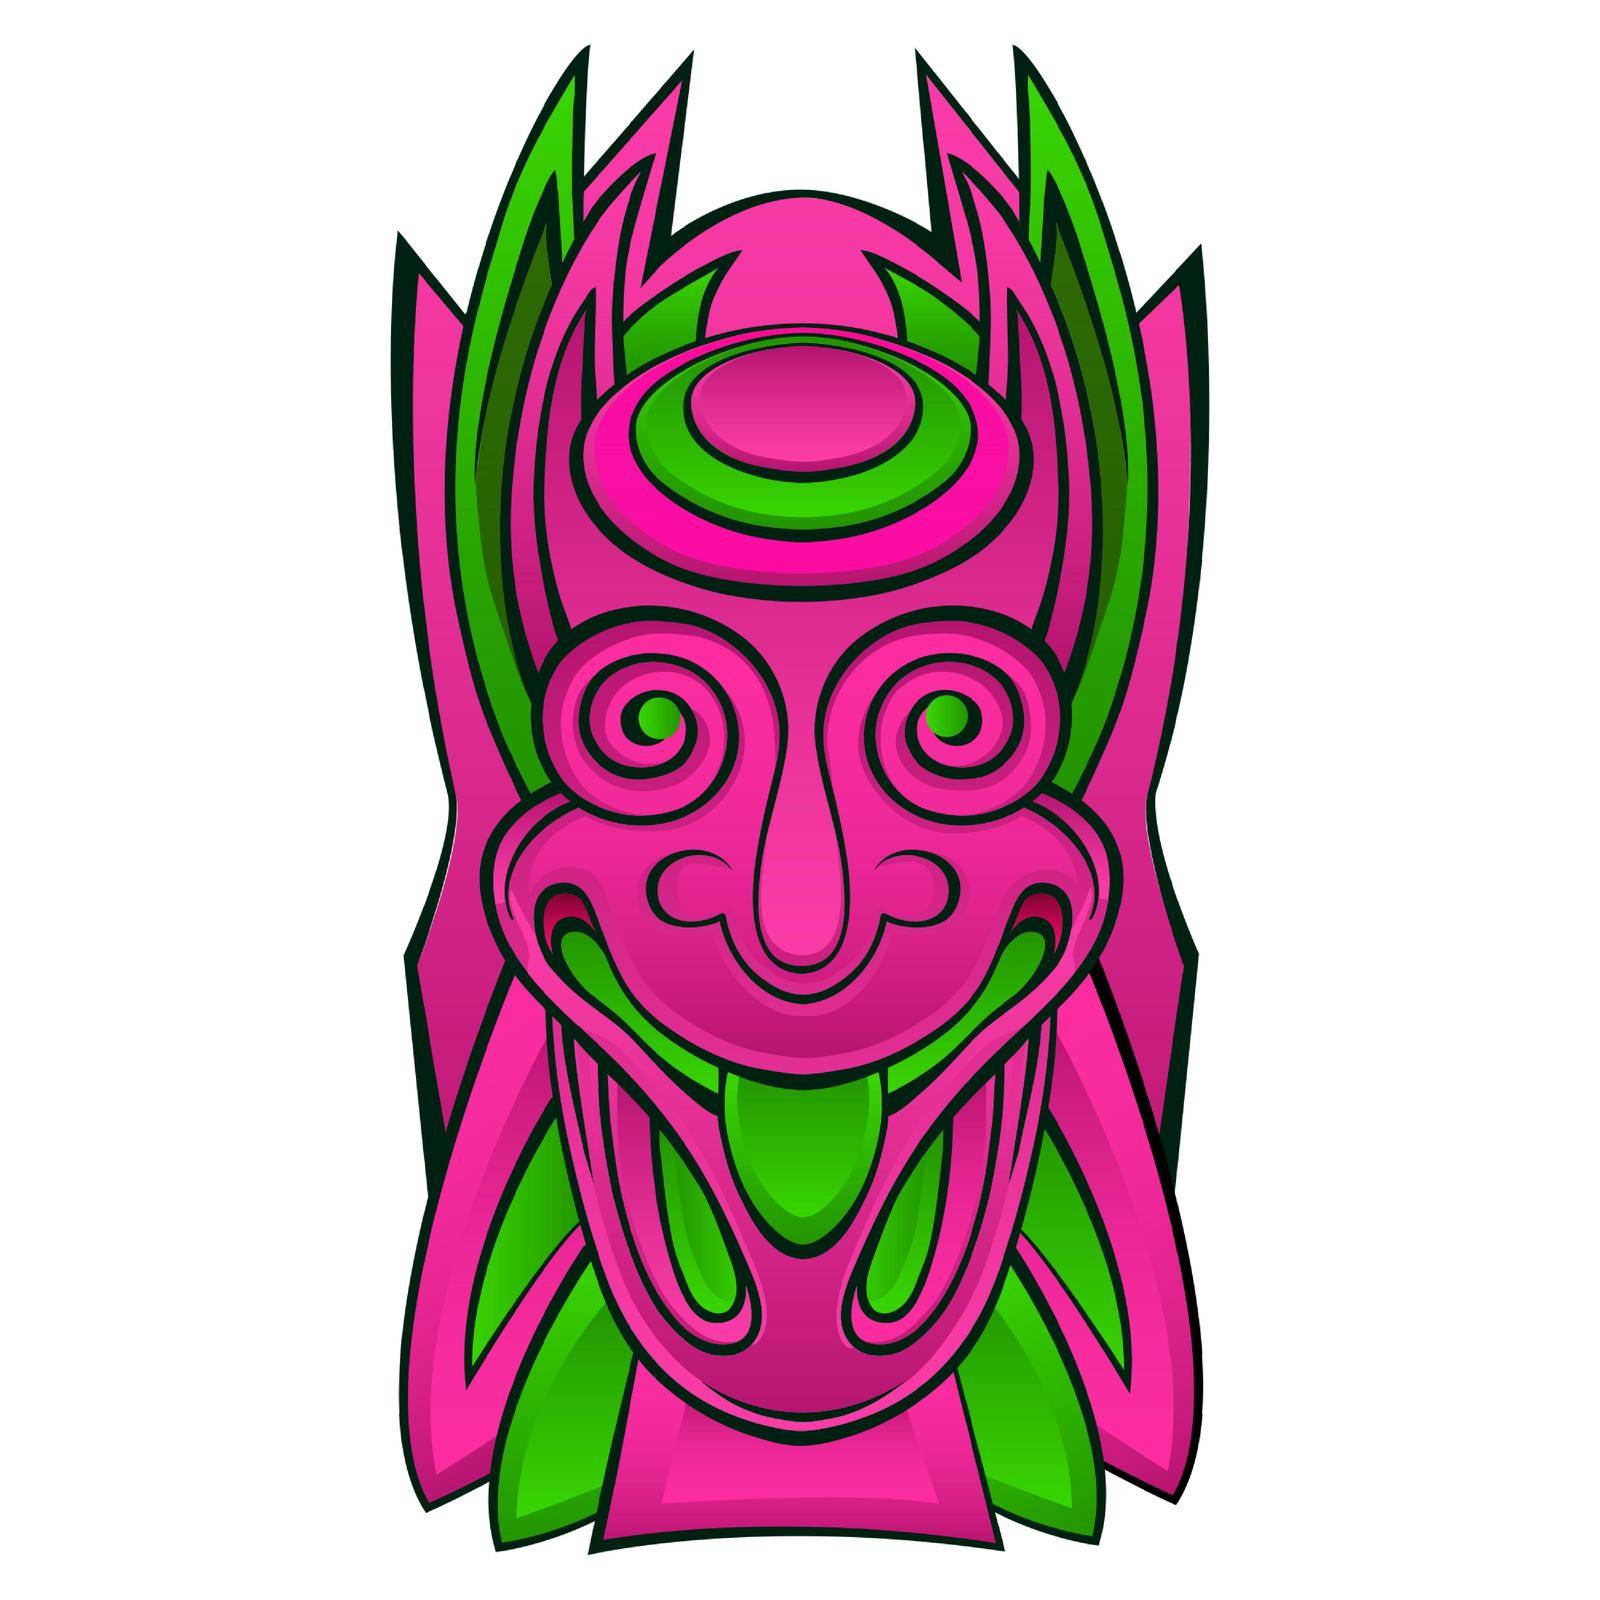 Tiki idol mask by roman79